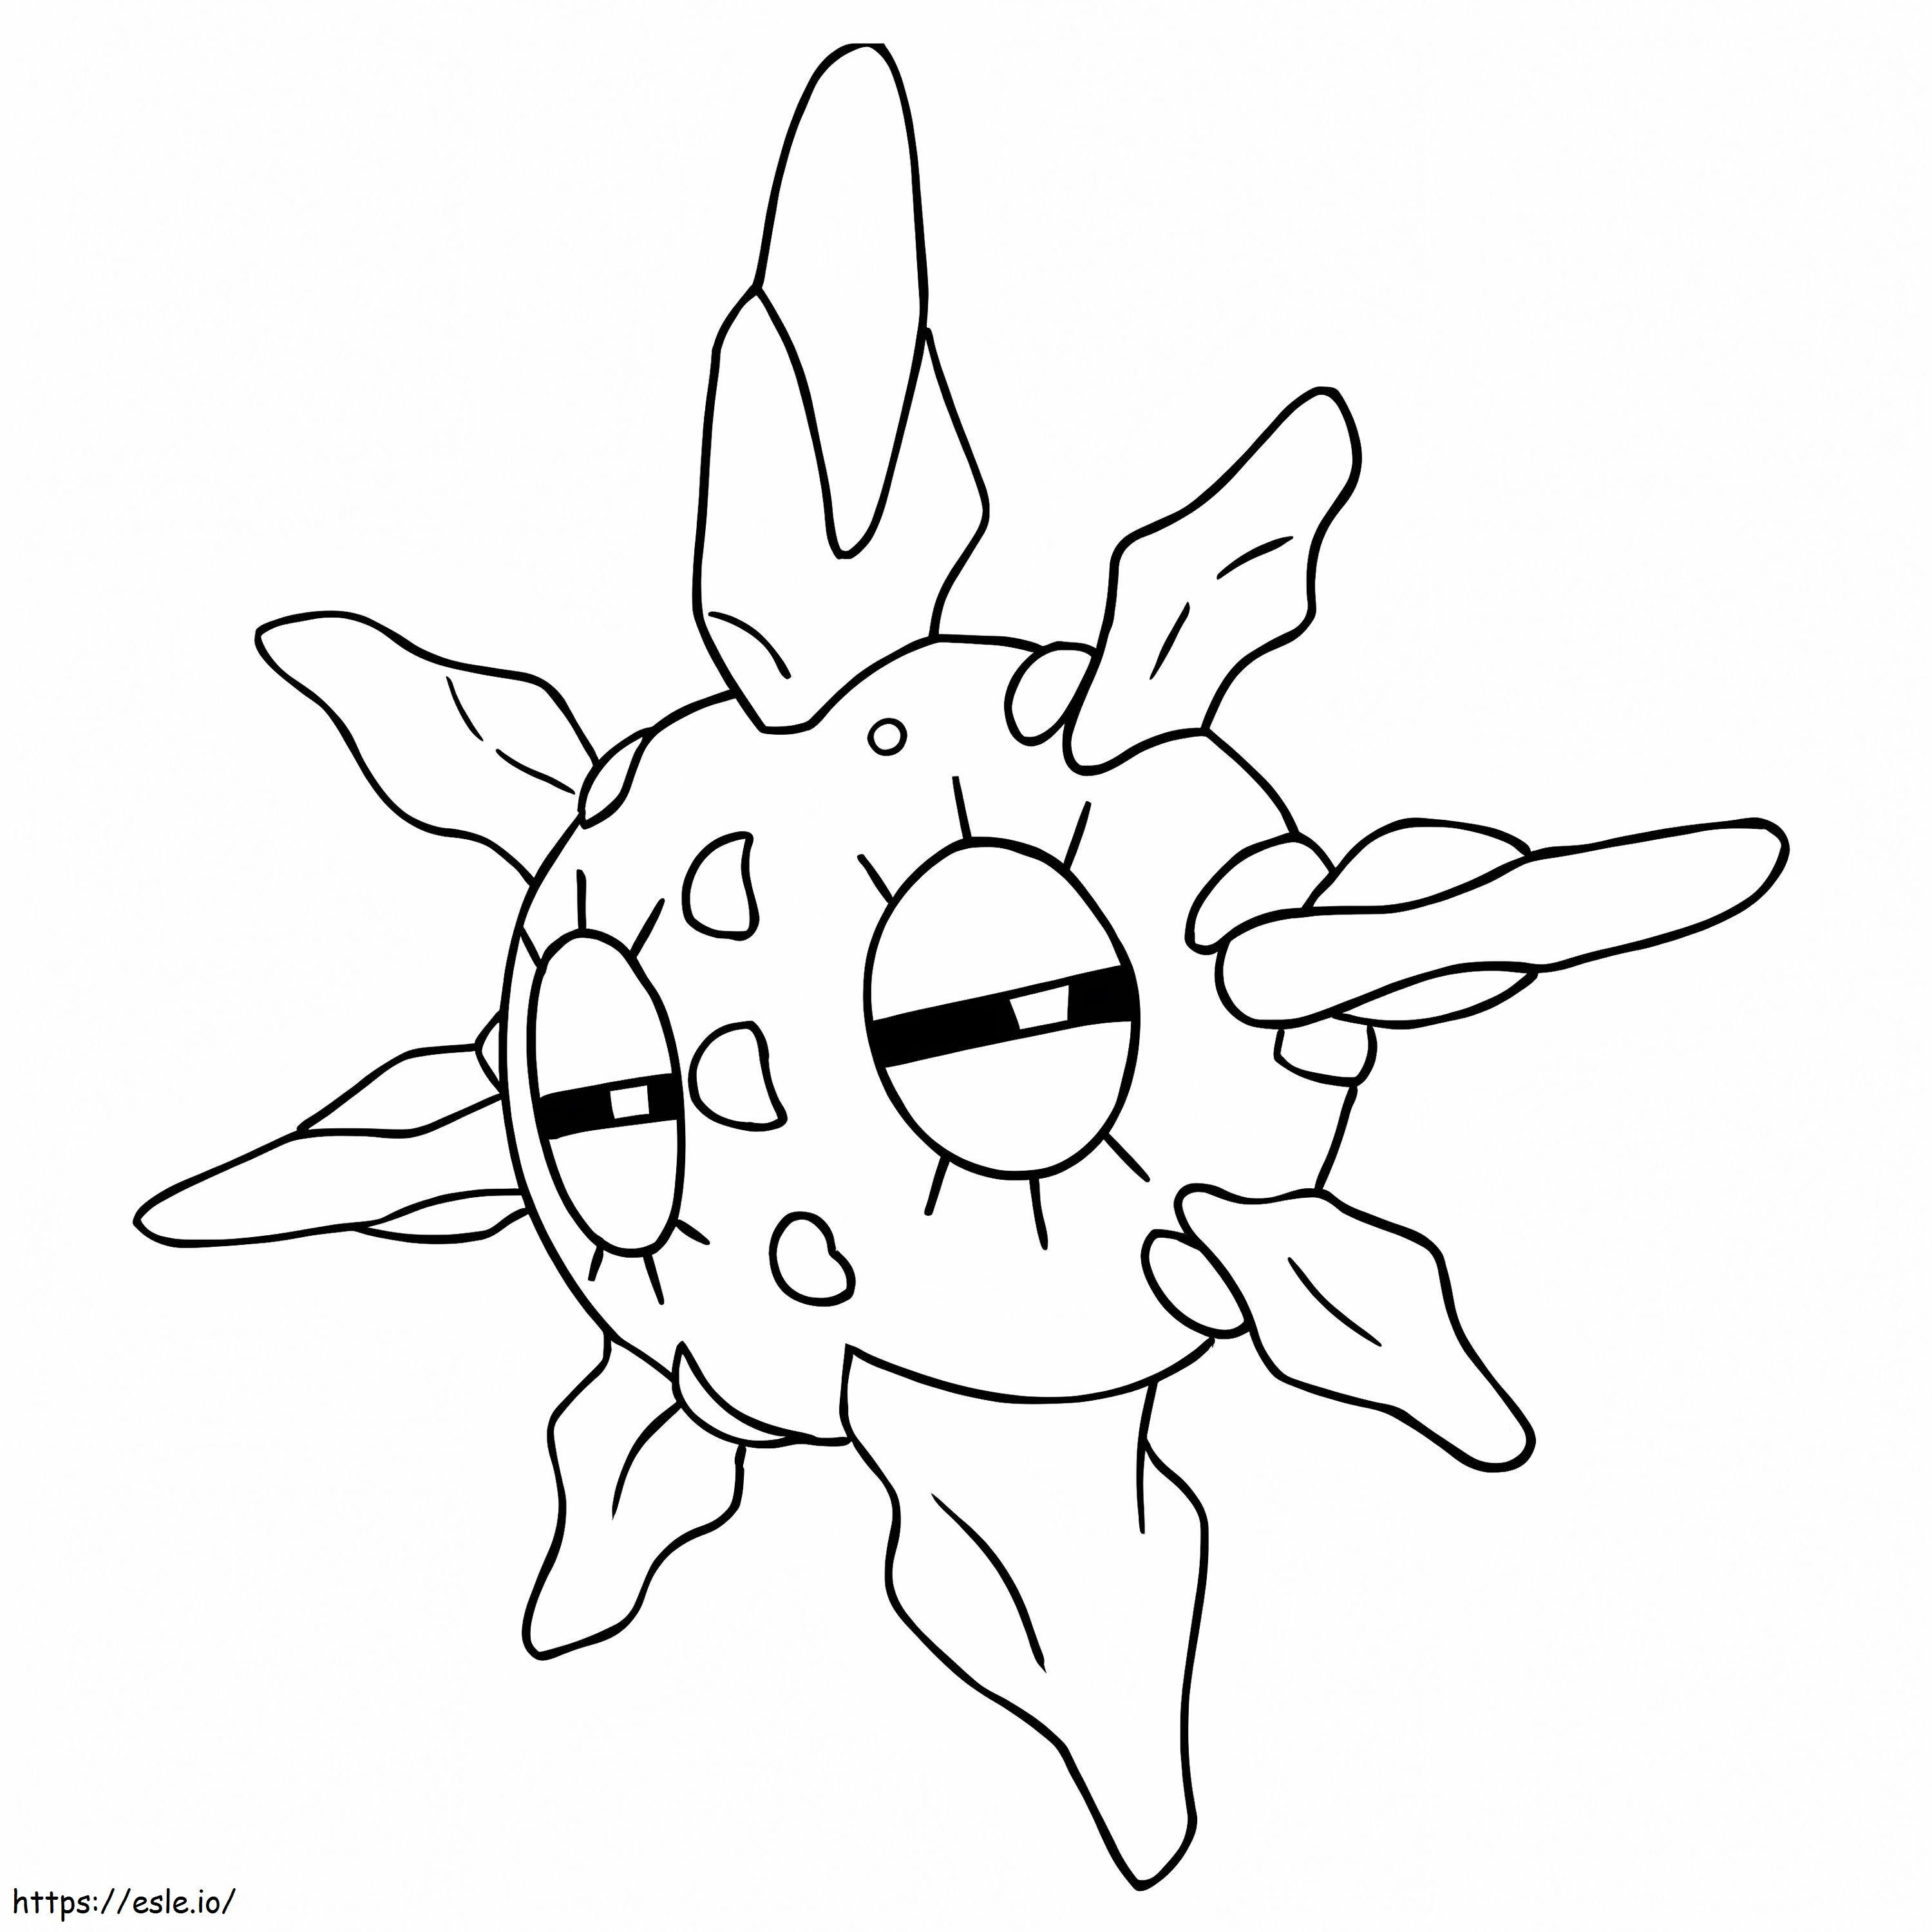 Solrock-Pokémon ausmalbilder